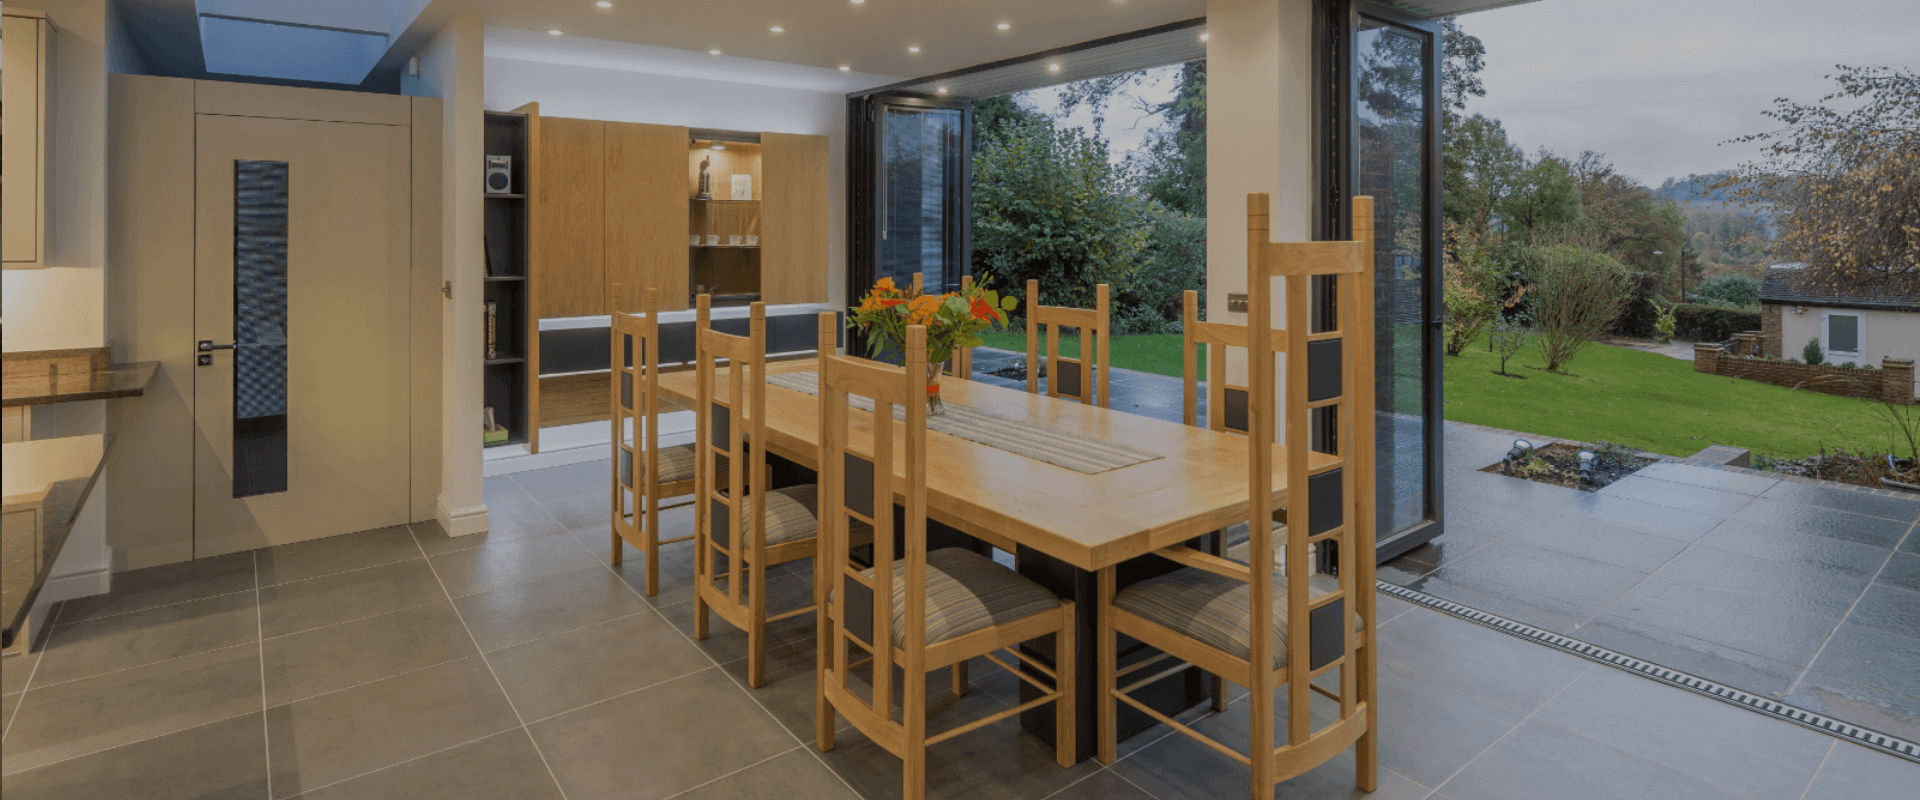 Dinning area interior design